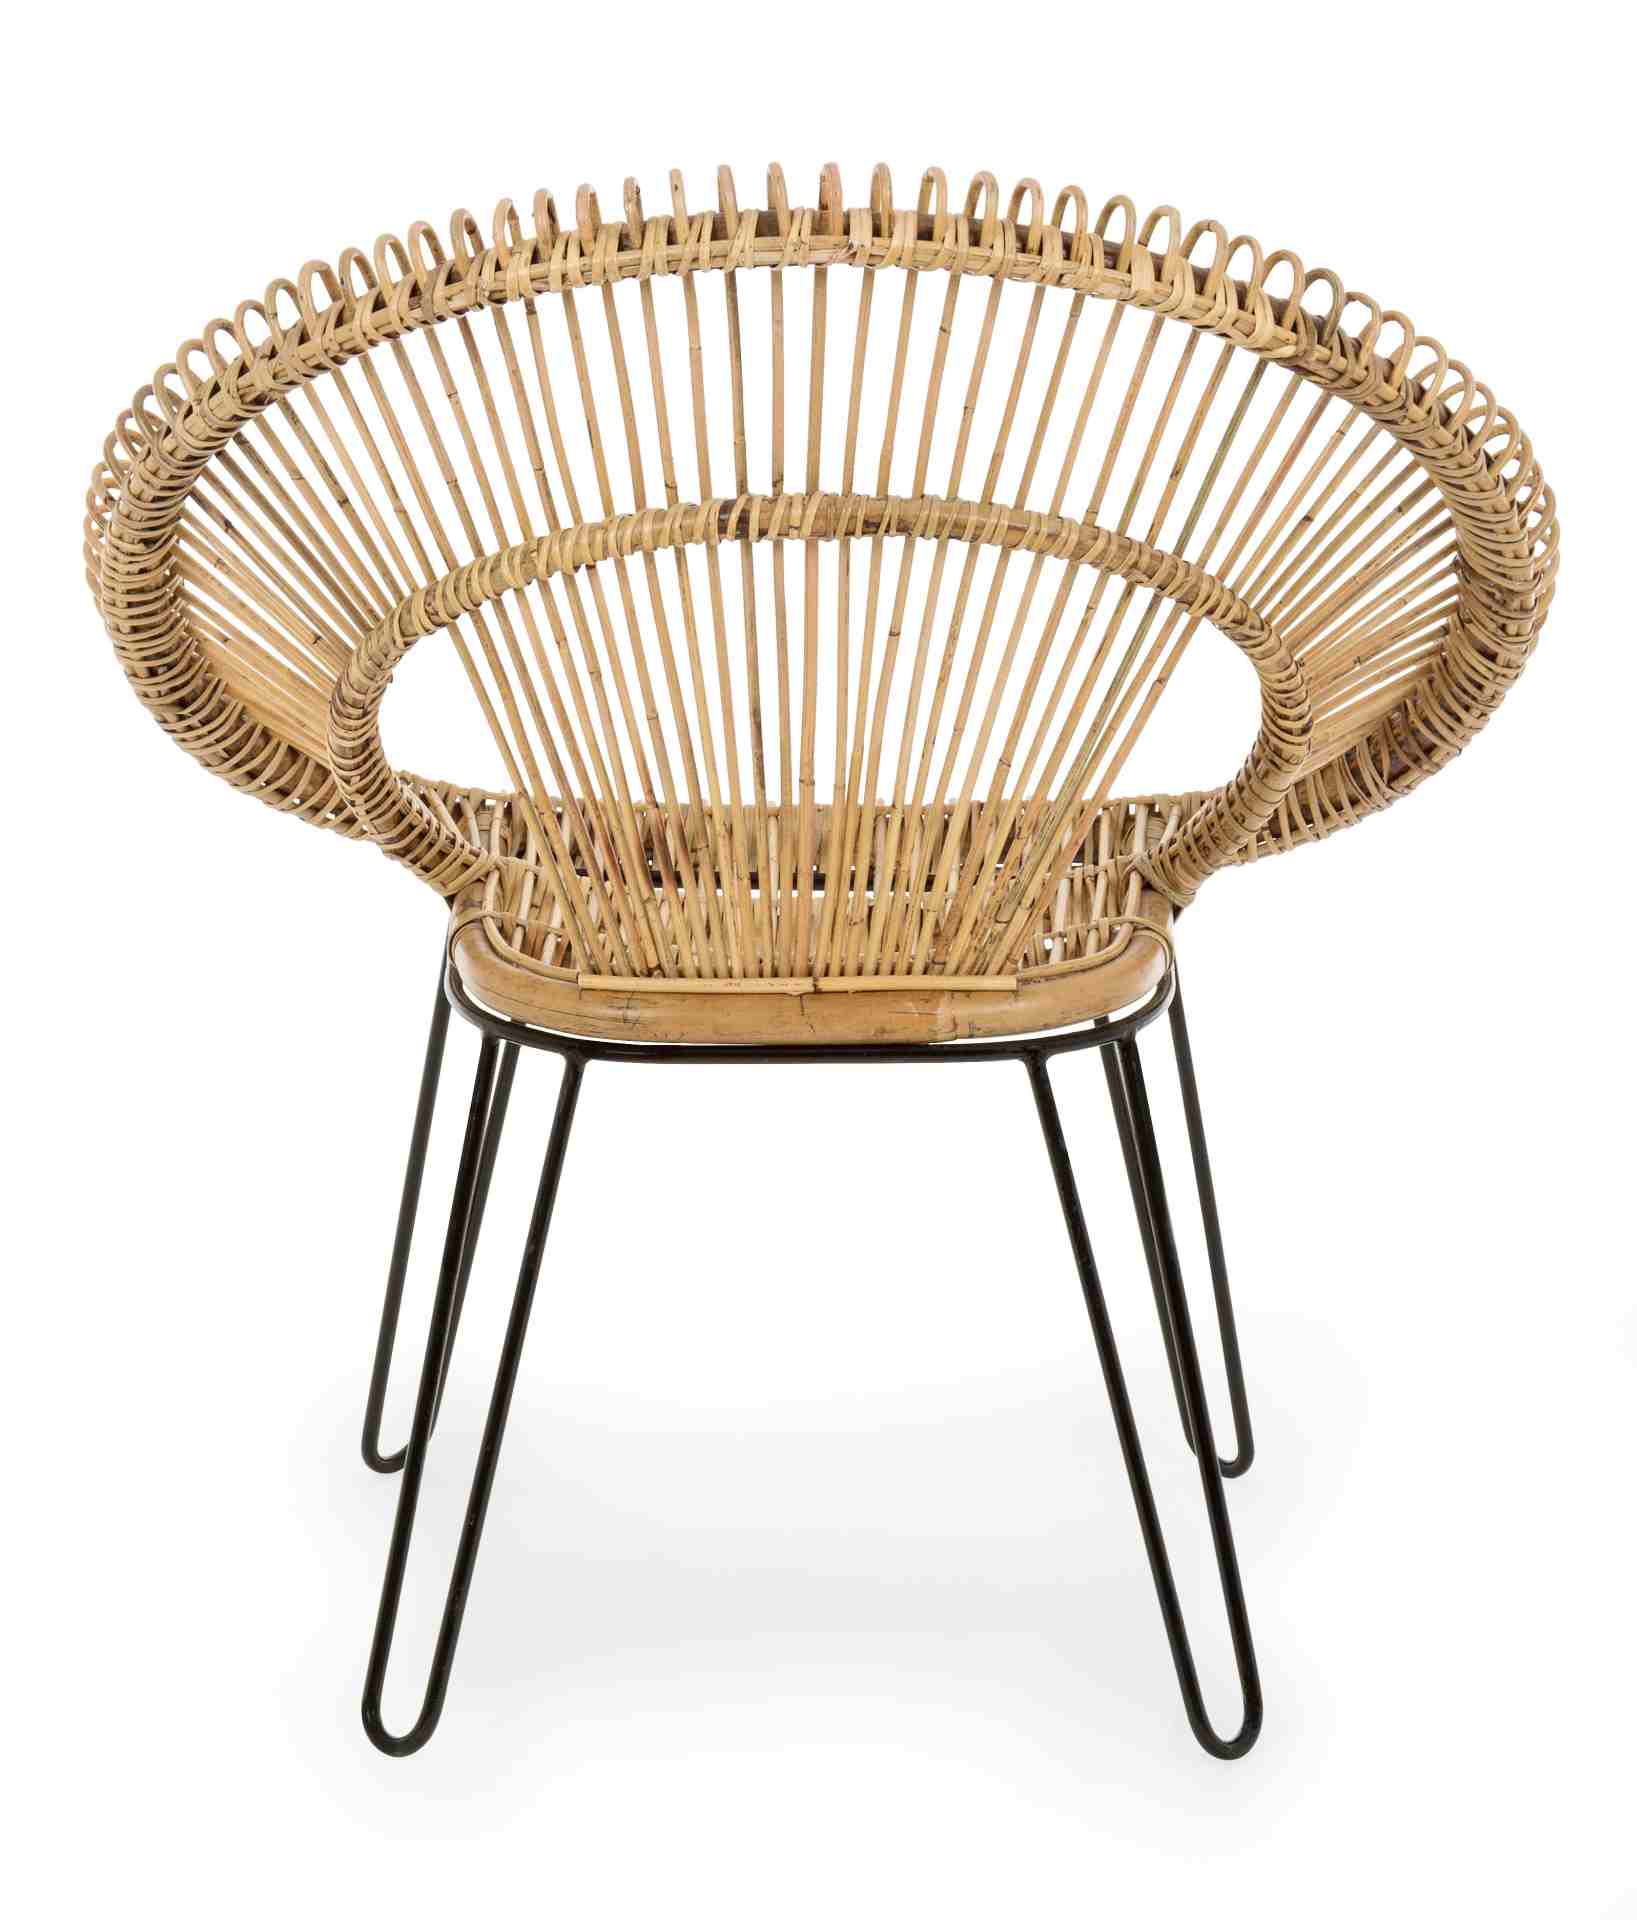 Der Sessel Esteban überzeugt mit seinem klassischen Design. Gefertigt wurde er aus Rattan, welches einen natürlichen Farbton besitzt. Das Gestell ist aus Metall und hat eine schwarze Farbe. Der Sessel besitzt eine Sitzhöhe von 45 cm. Die Breite beträgt 83